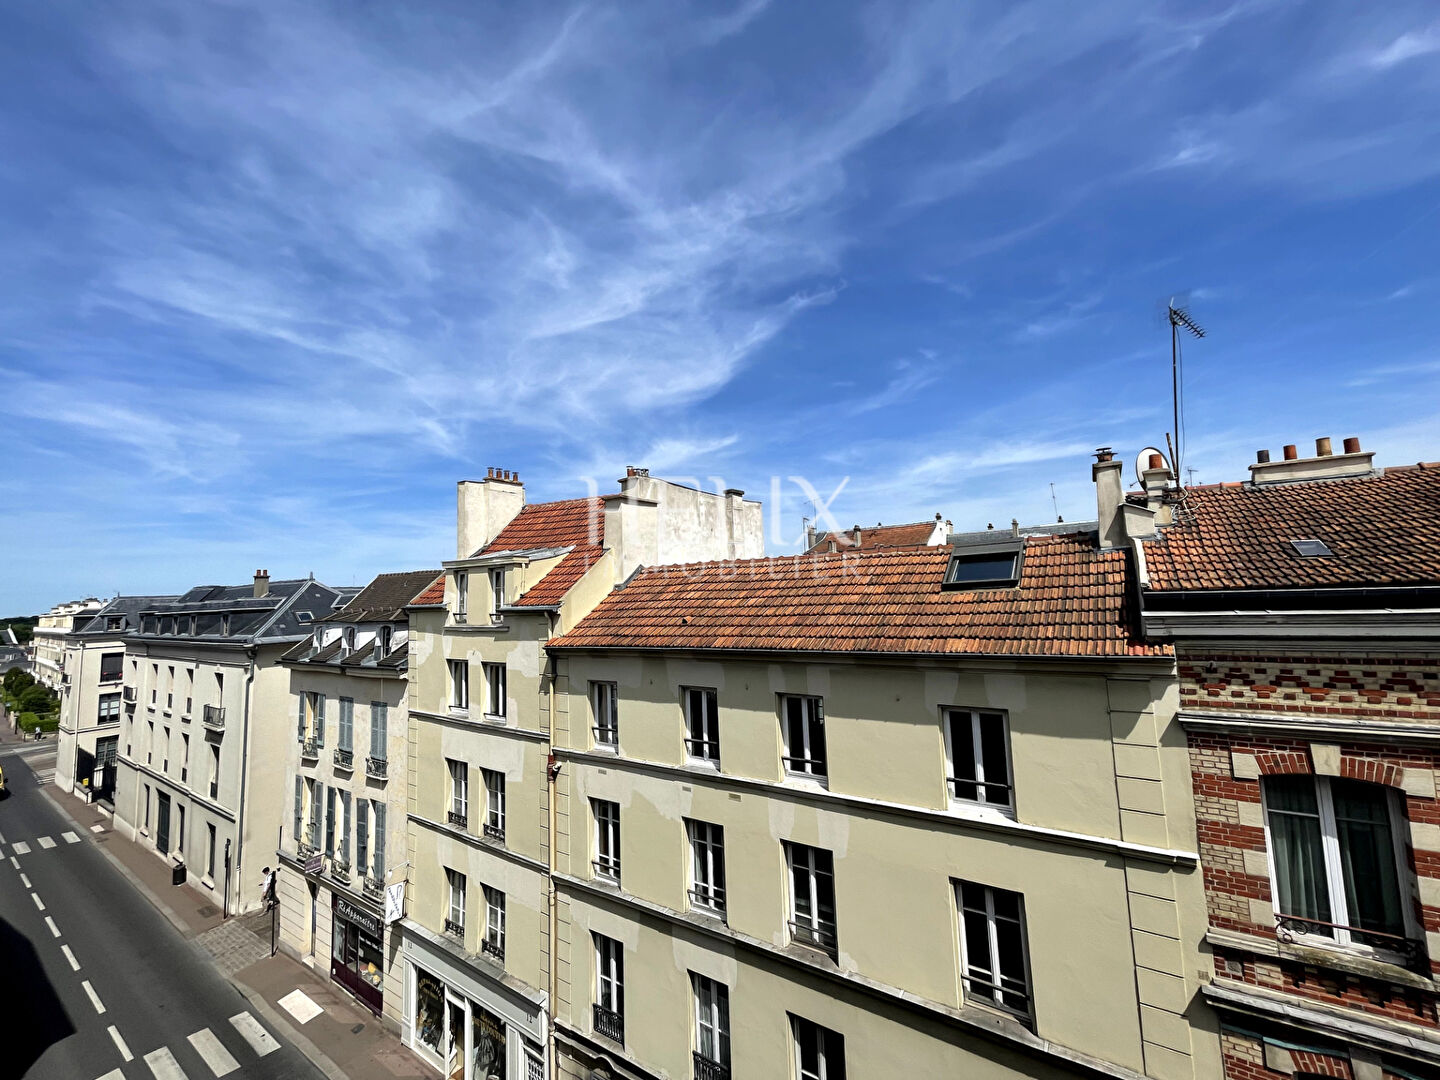 A louer superbe appartement 2 pièces à Saint Germain en Laye, à 2 mn du RER A